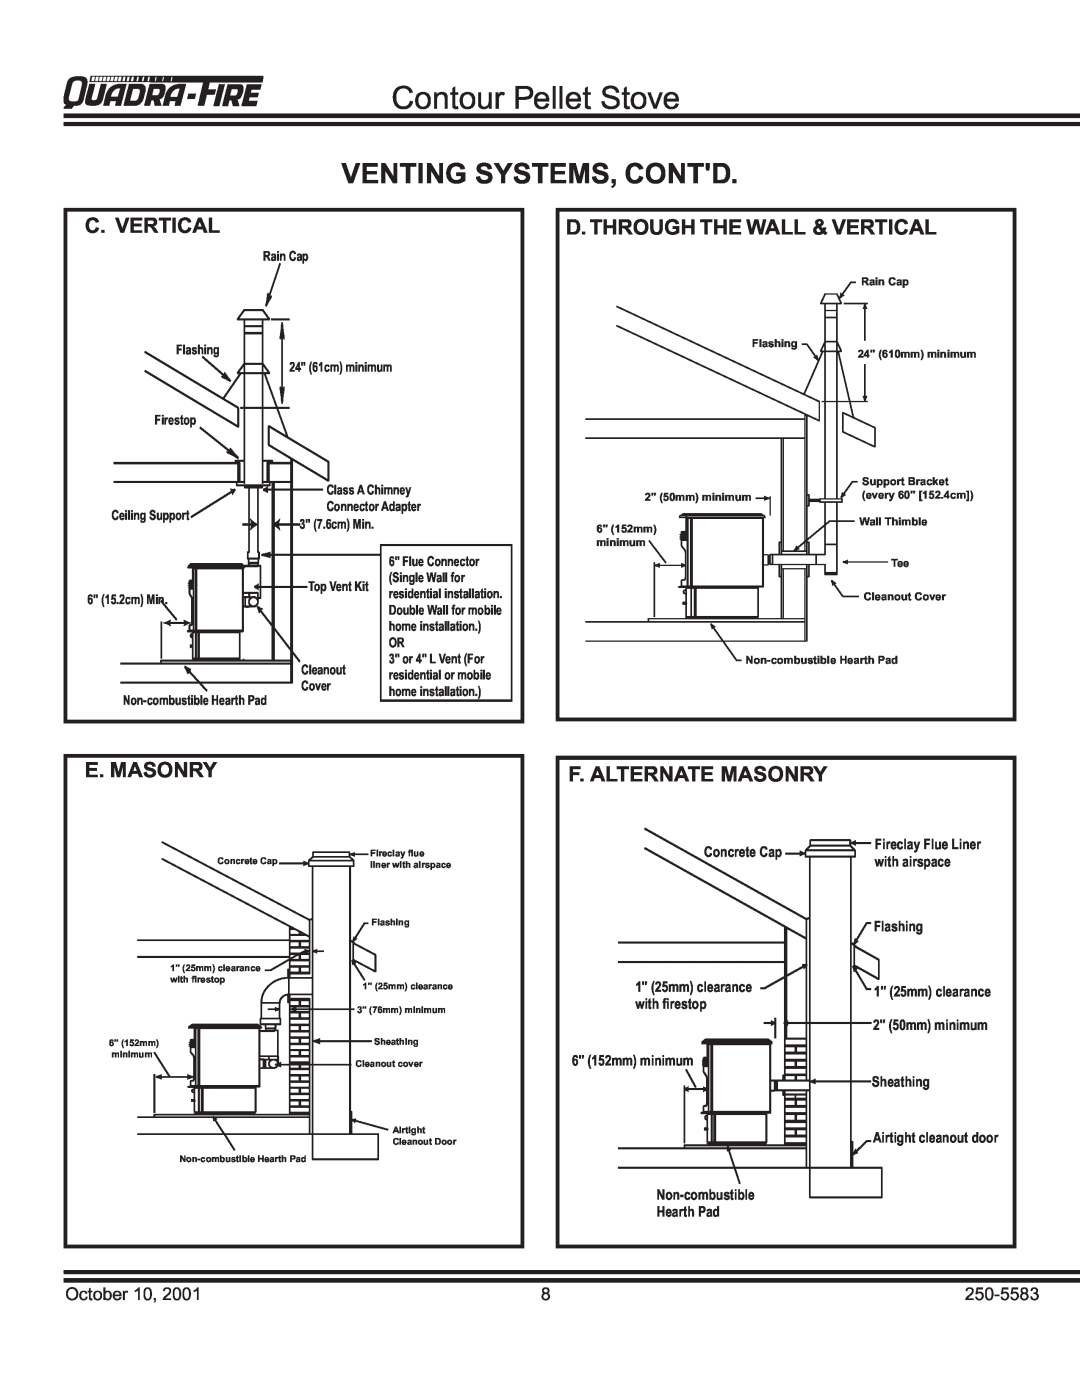 Quadra-Fire QUADRA-FIRE CONTOUR warranty Venting Systems, Contd, C. Vertical, D. Through The Wall & Vertical, E. Masonry 